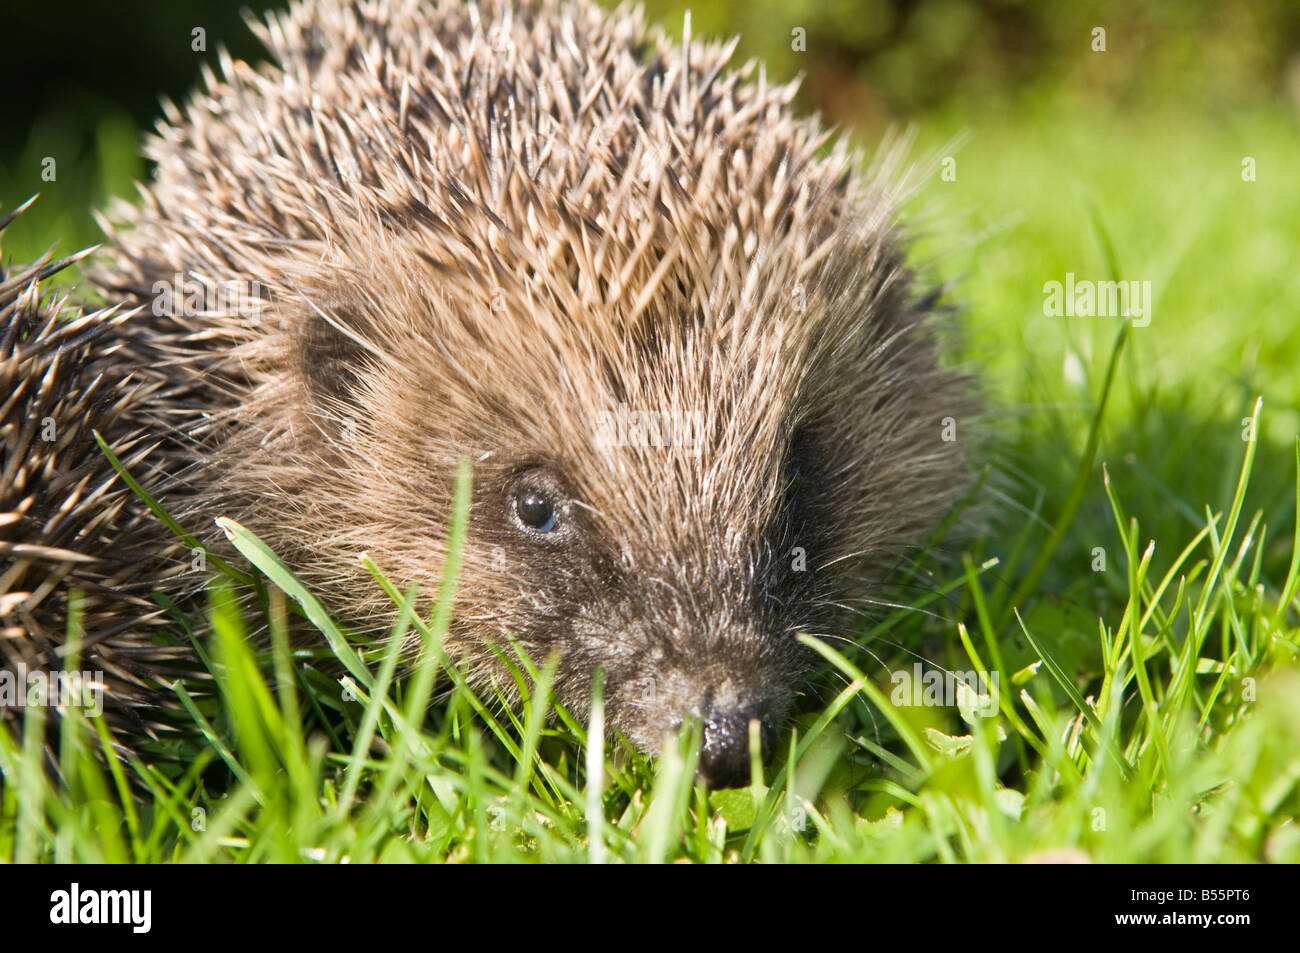 Hedgehog in UK garden Stock Photo